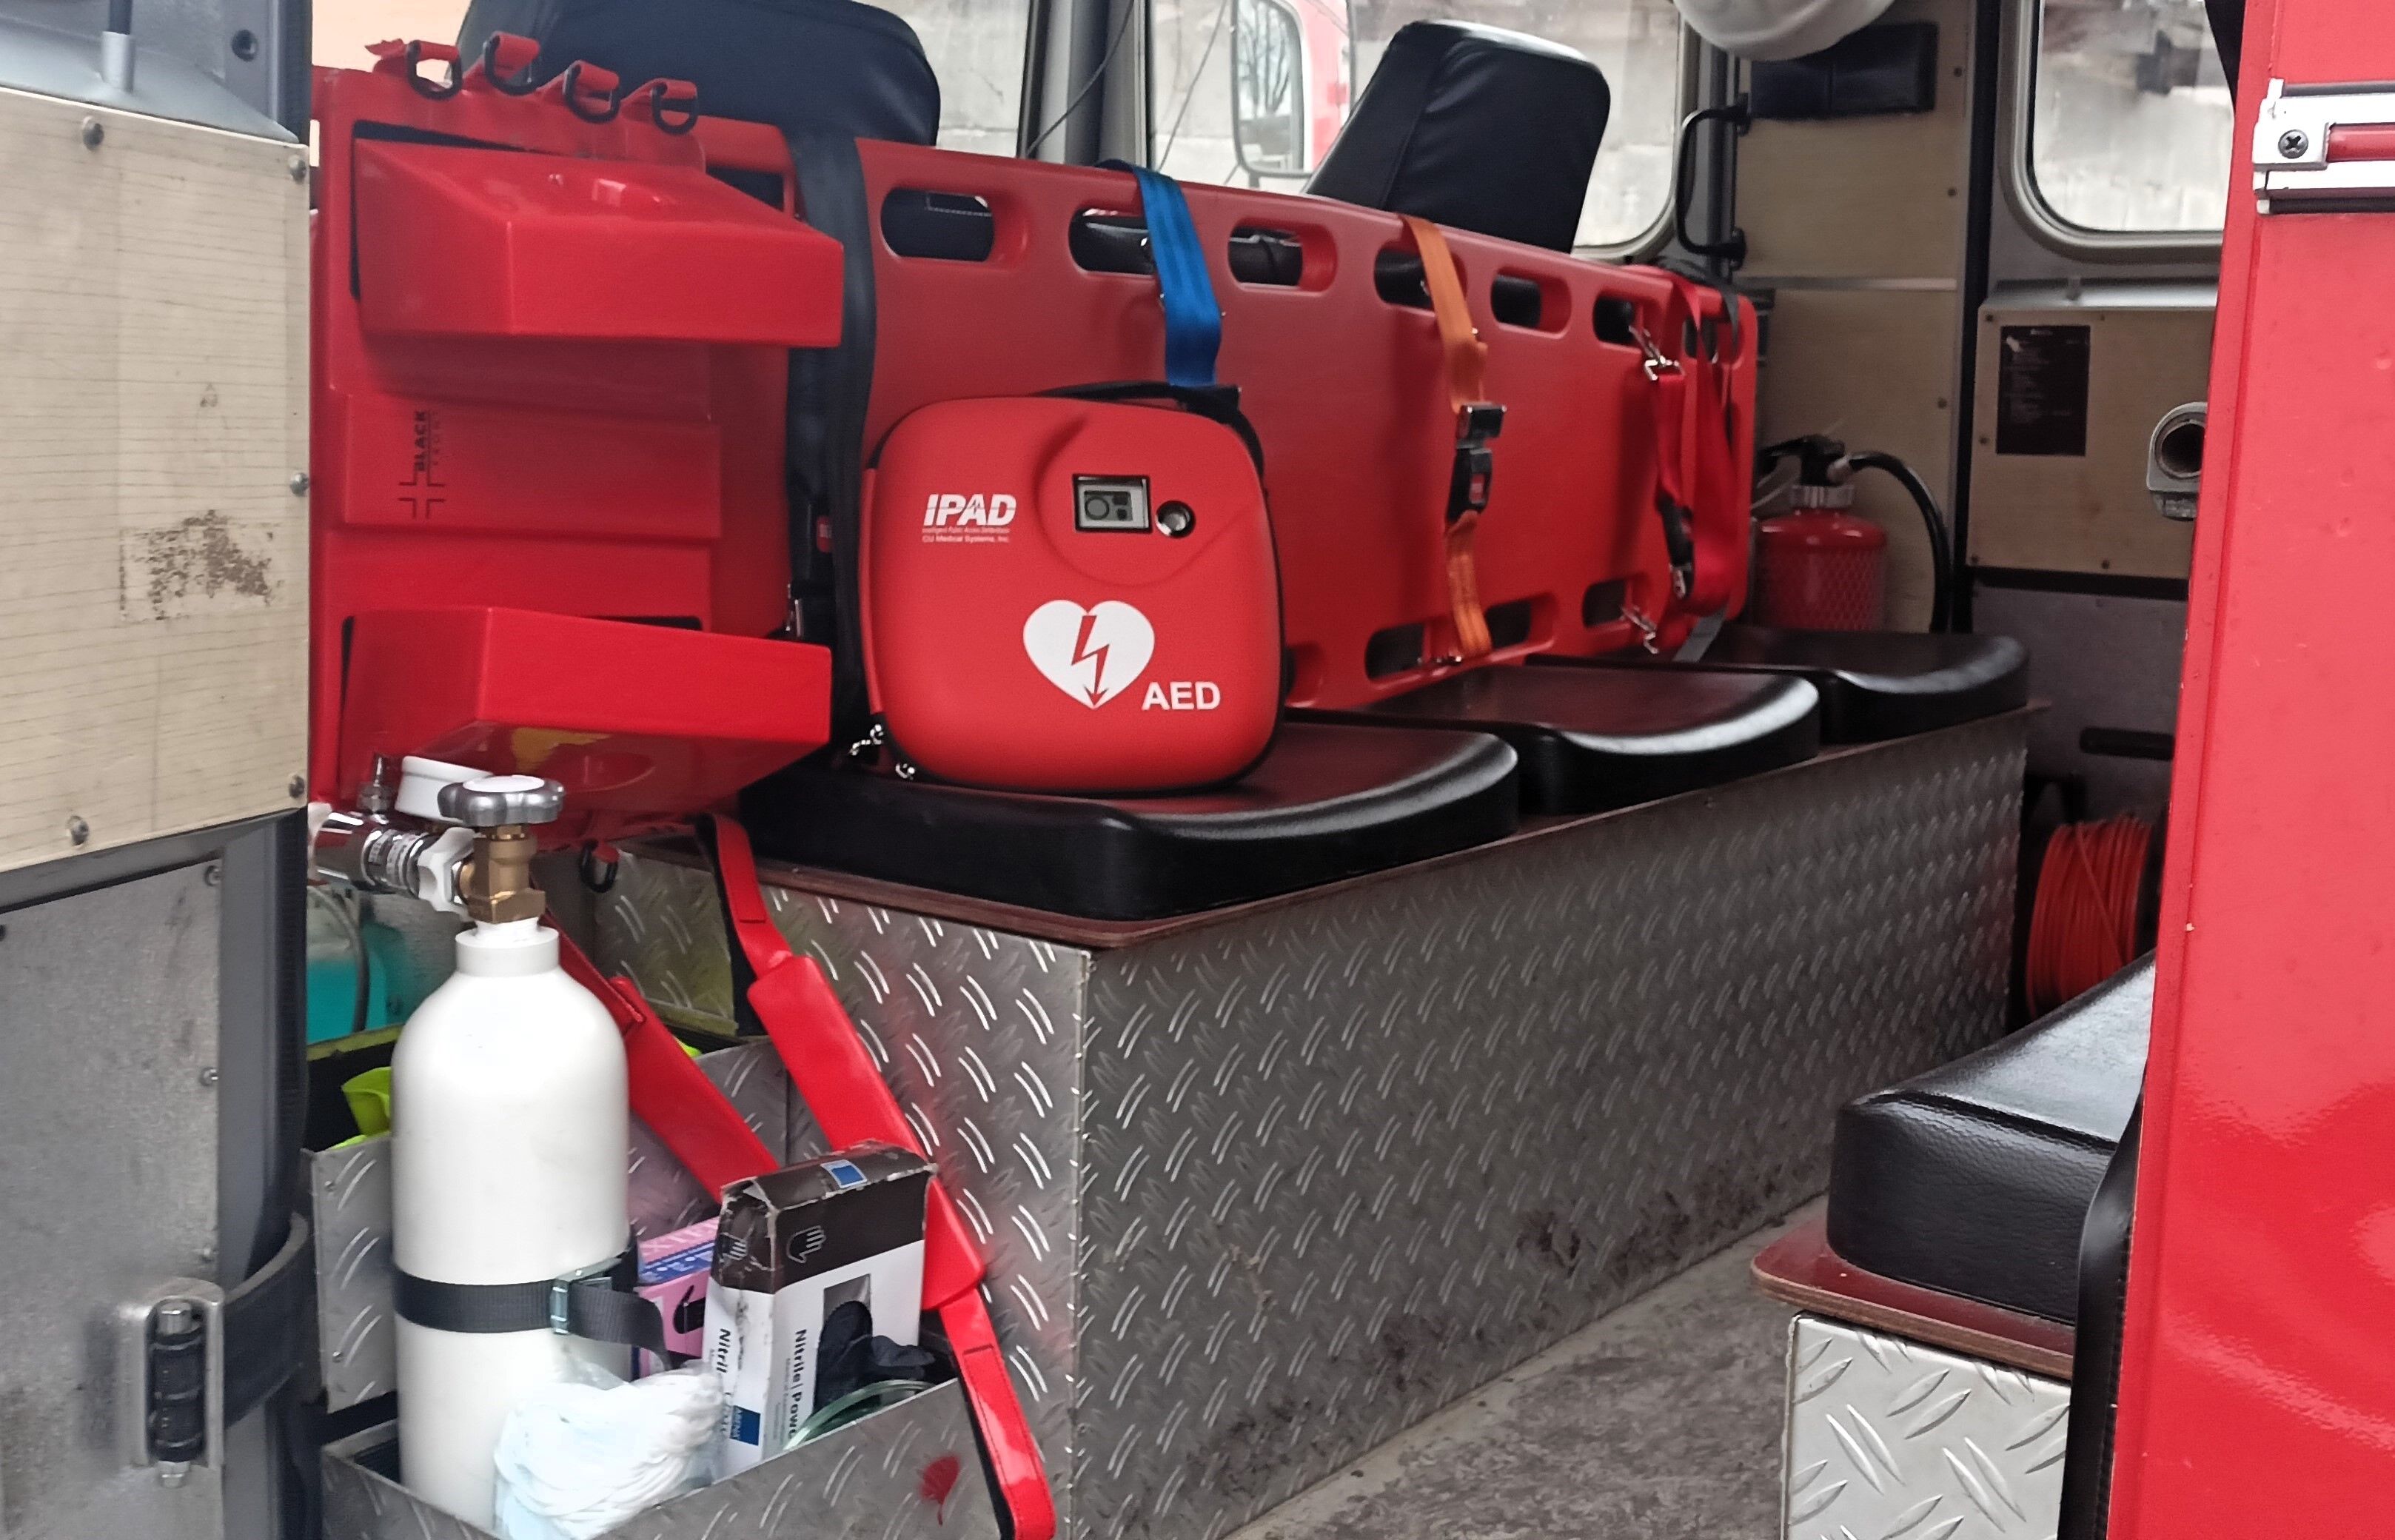 Defibrylator AED w czerwonej torbie z logotypem znajduje się w środku pojazdu obok czerwonych opakowań medycznych i aparatury ratunkowej.